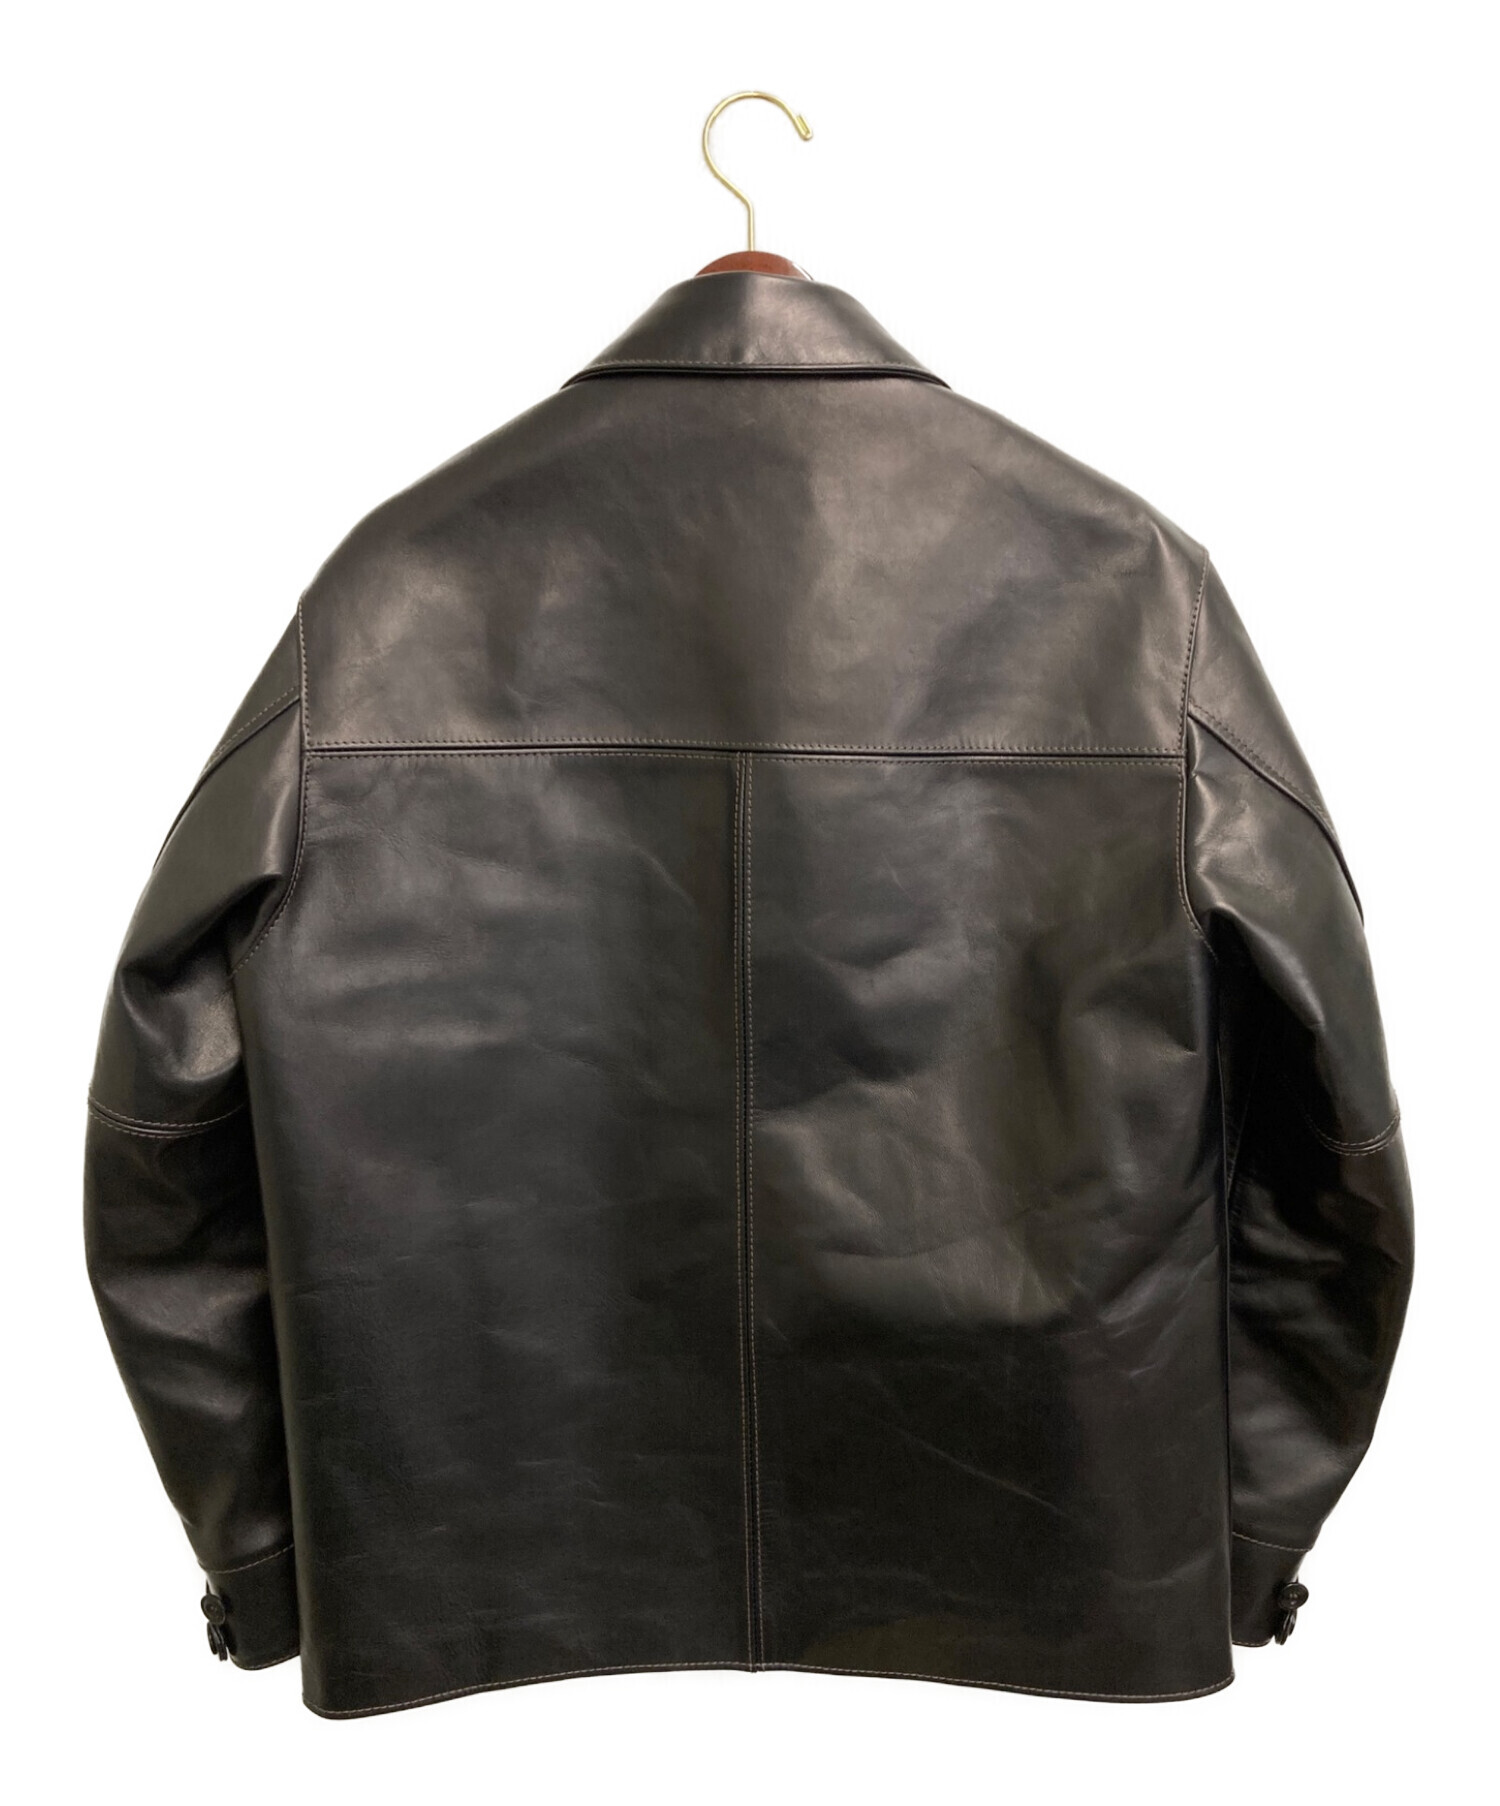 Y'2 leather (ワイツーレザー) ホースハイドカーコート ブラック サイズ:42